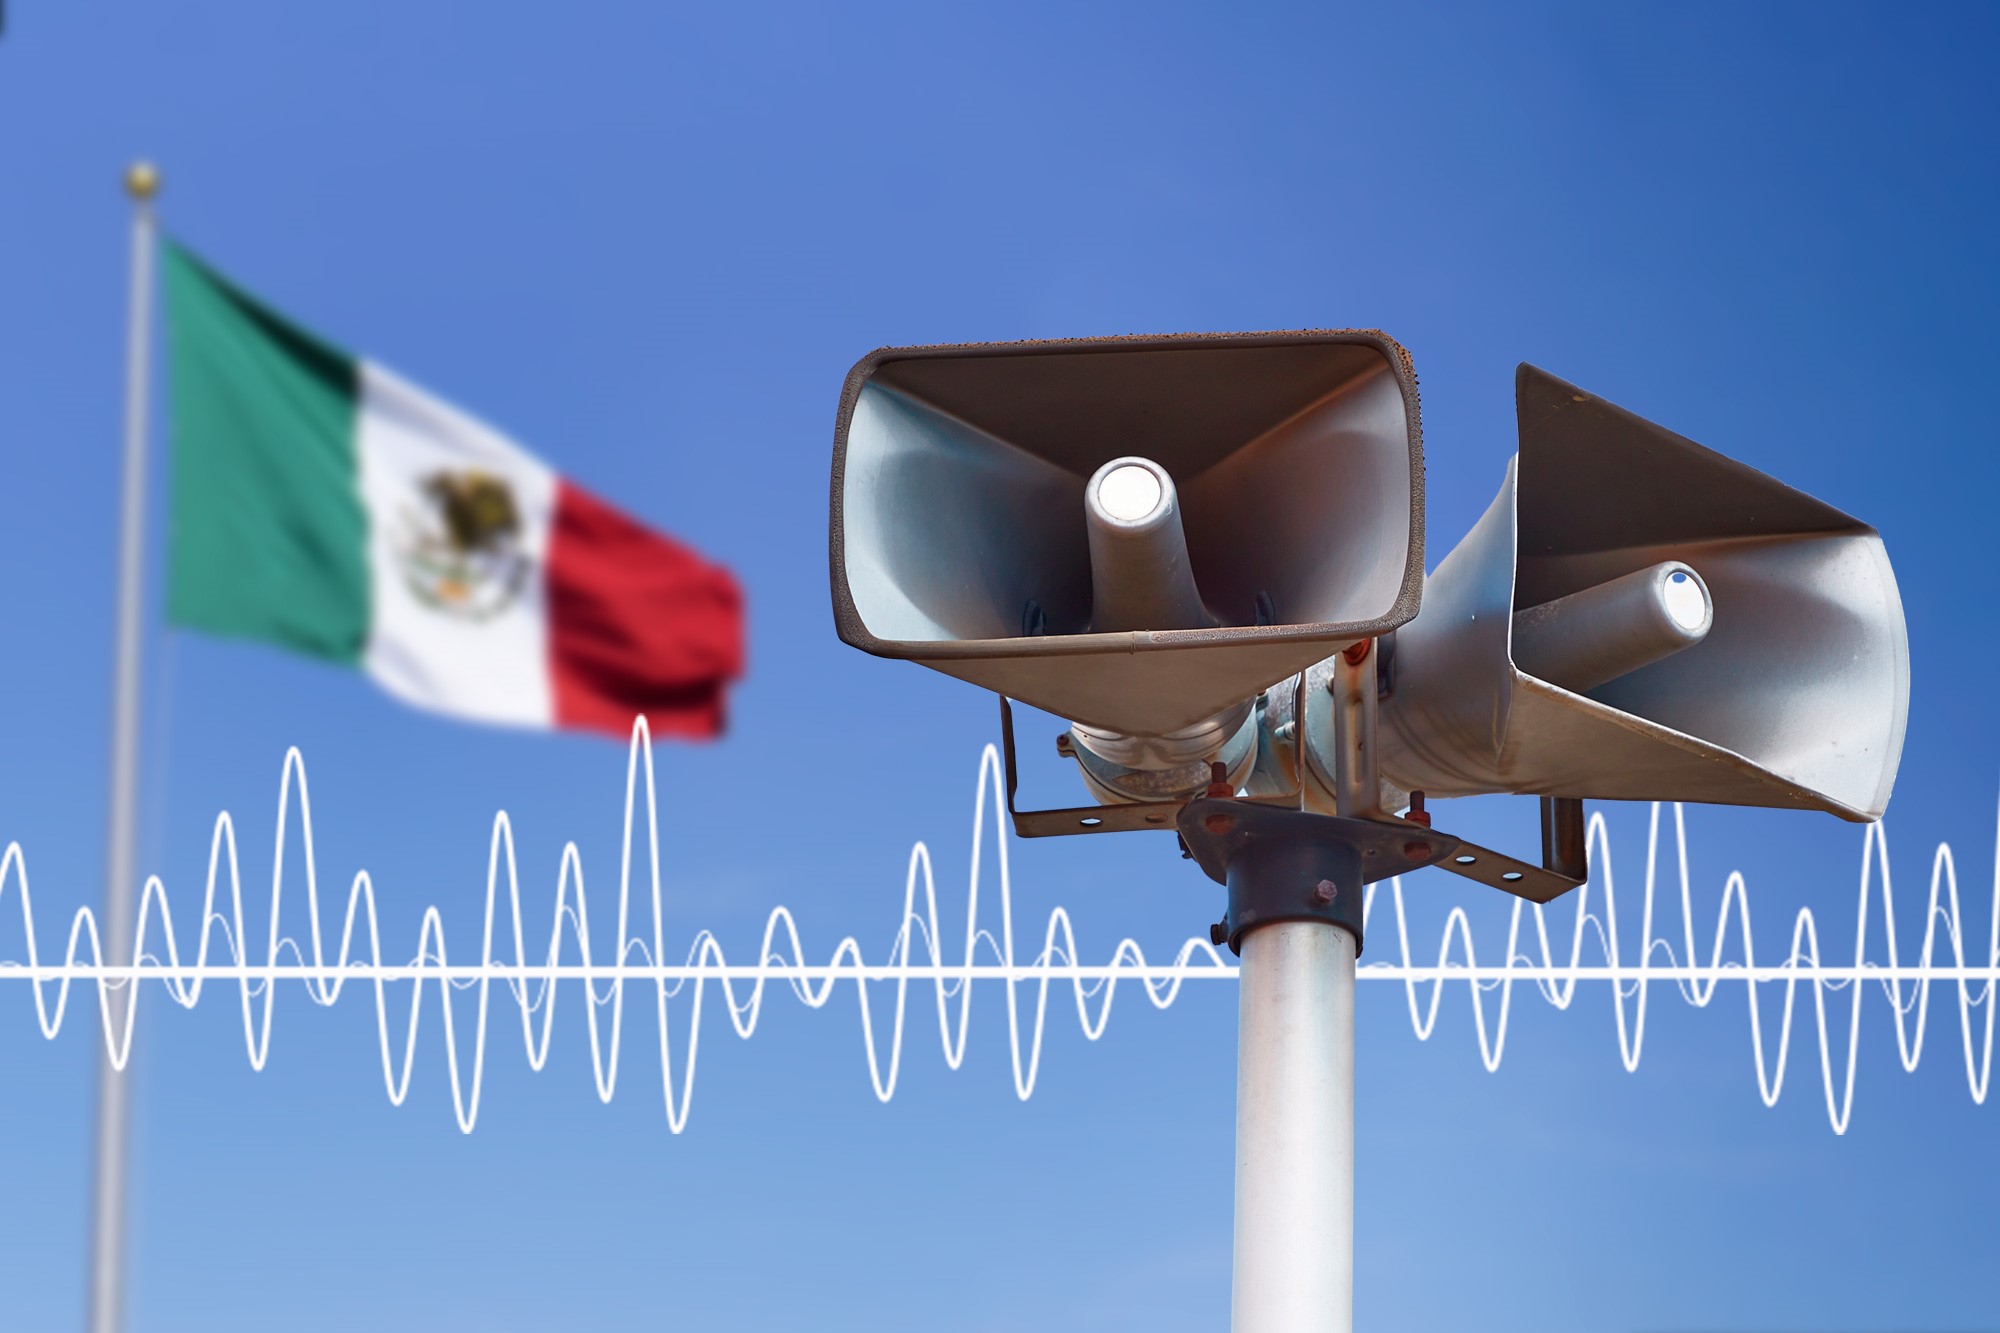 Sismo de 5.8 en Puebla dispara alerta sísmica en CDMX